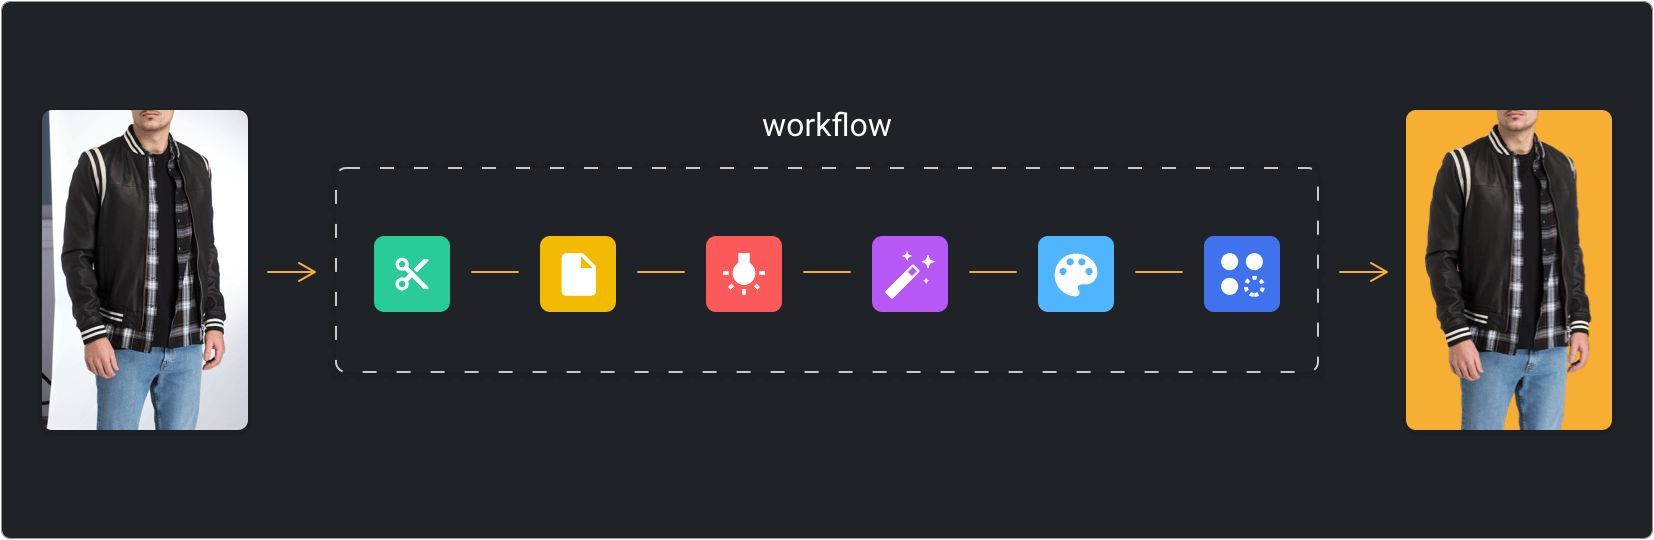 Define Your Workflow